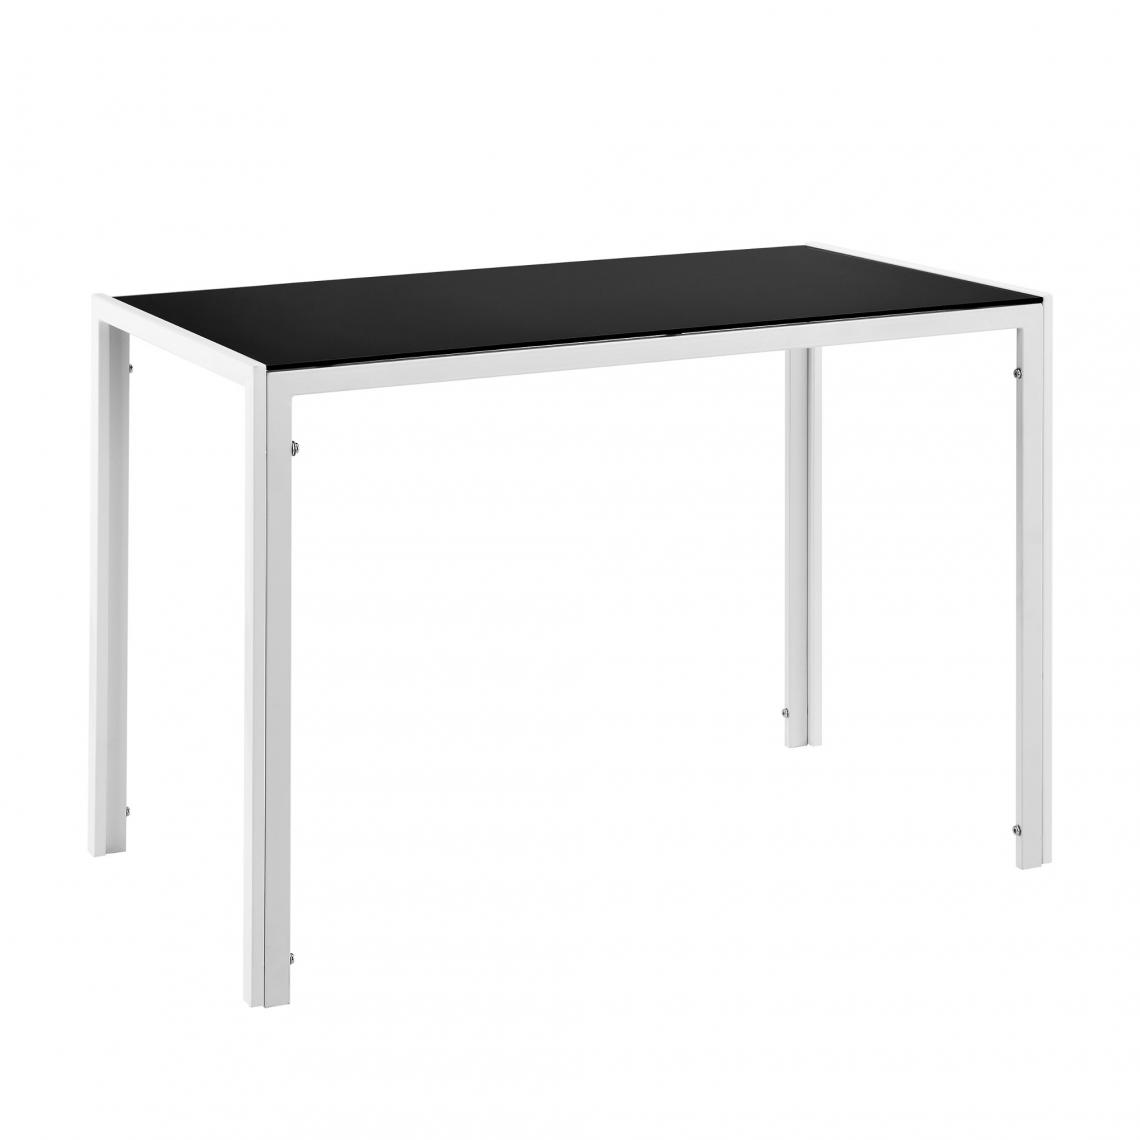 Helloshop26 - Table de salle à manger cuisine salon plateau en verre pieds en acier 105 cm noir blanc 03_0006263 - Tables à manger